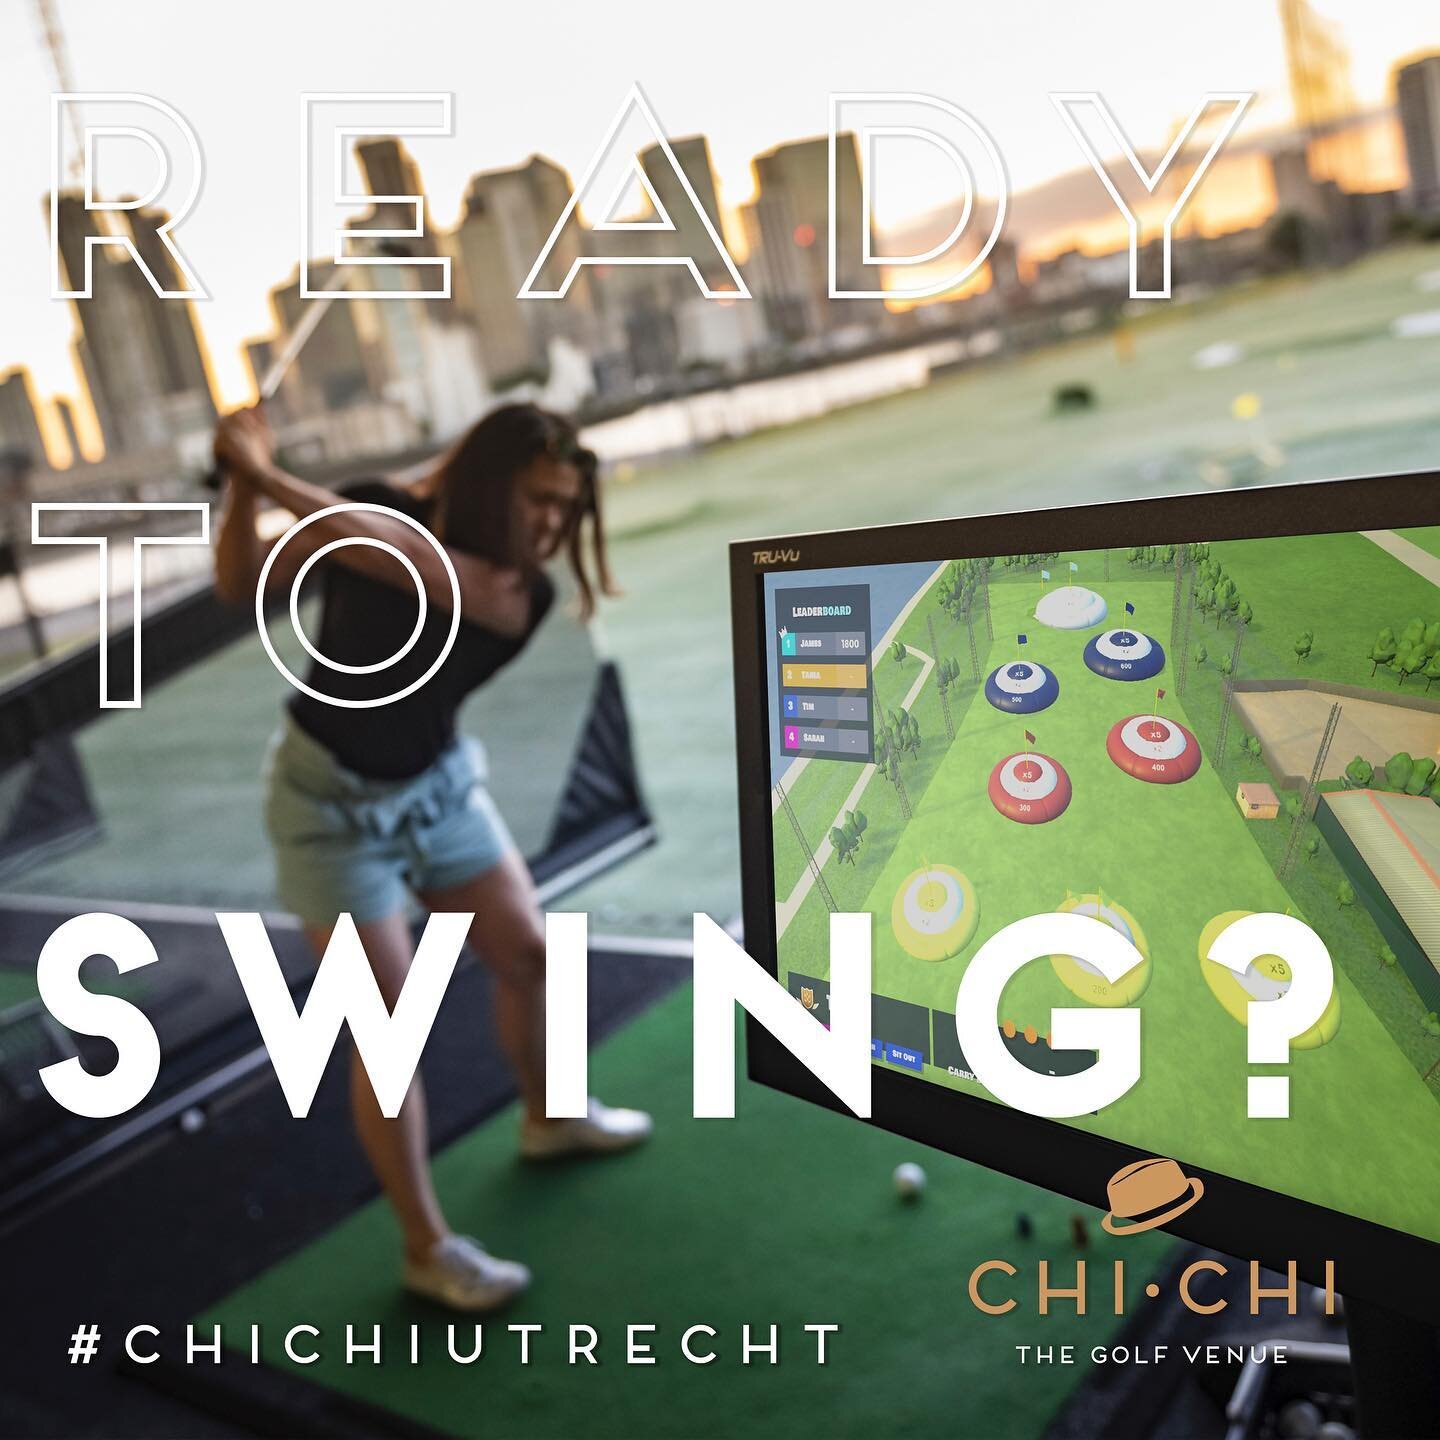 READY TO SWING?

Met de Inrange technologie voegt Chi Chi een nieuwe dimensie toe: golf als een dynamische en interactieve game. De slimme radartechnologie volgt en registreert de locatie en bewegingen van elke golfbal. Spelers kunnen online hun scor